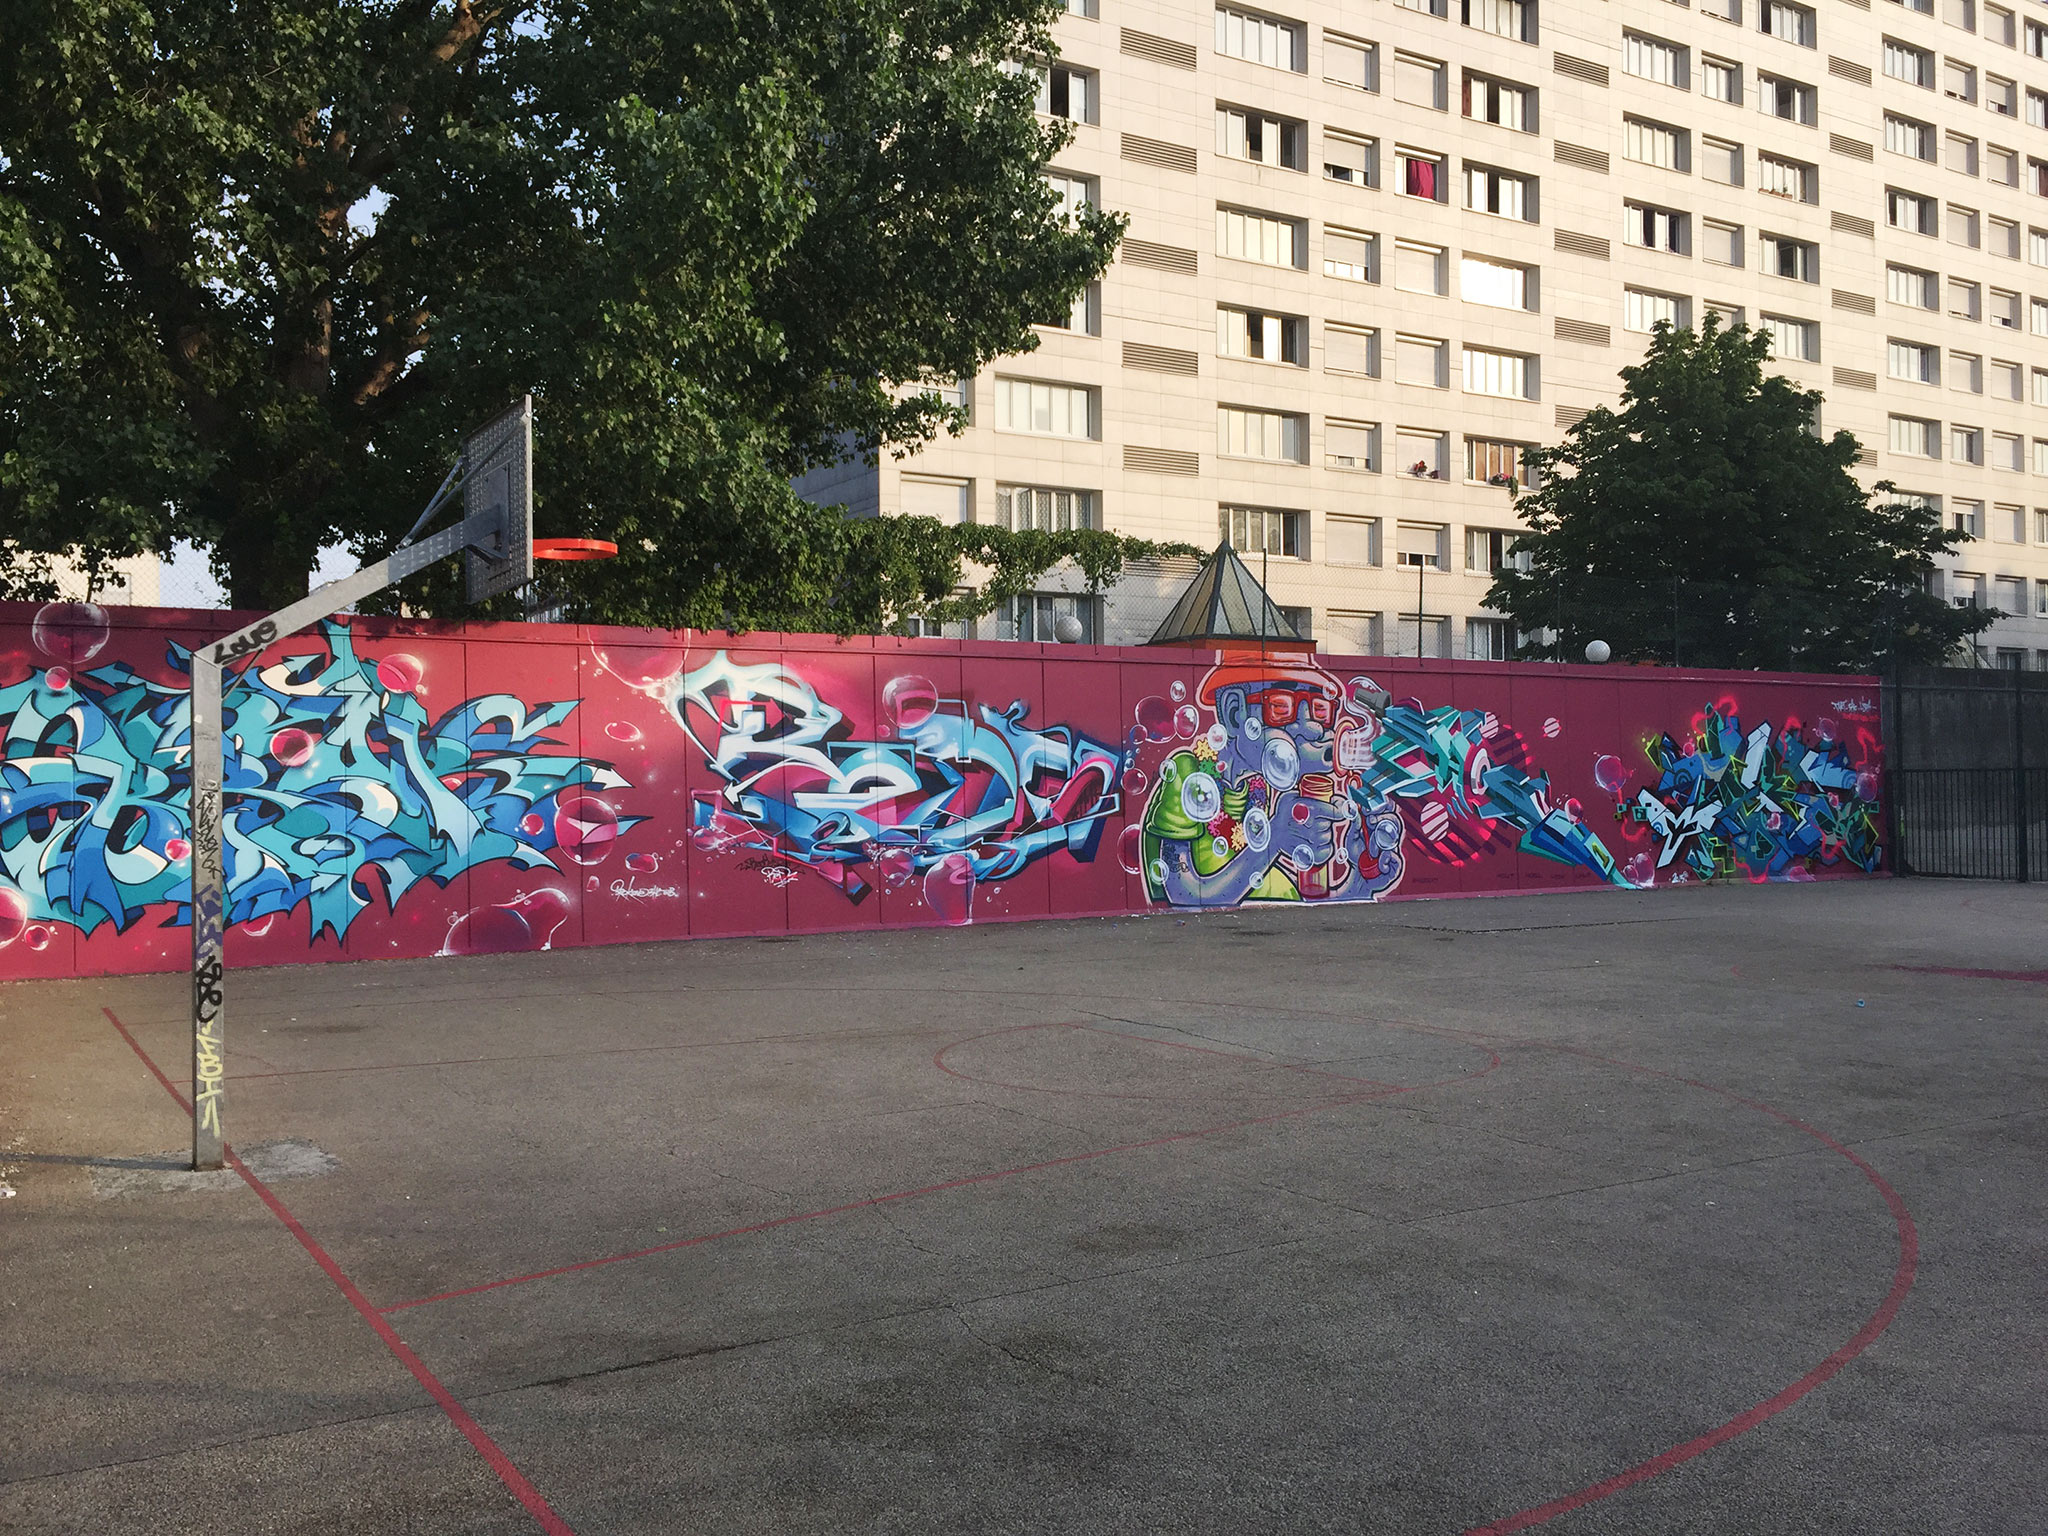 shogun_graffiti_paris_2015_5